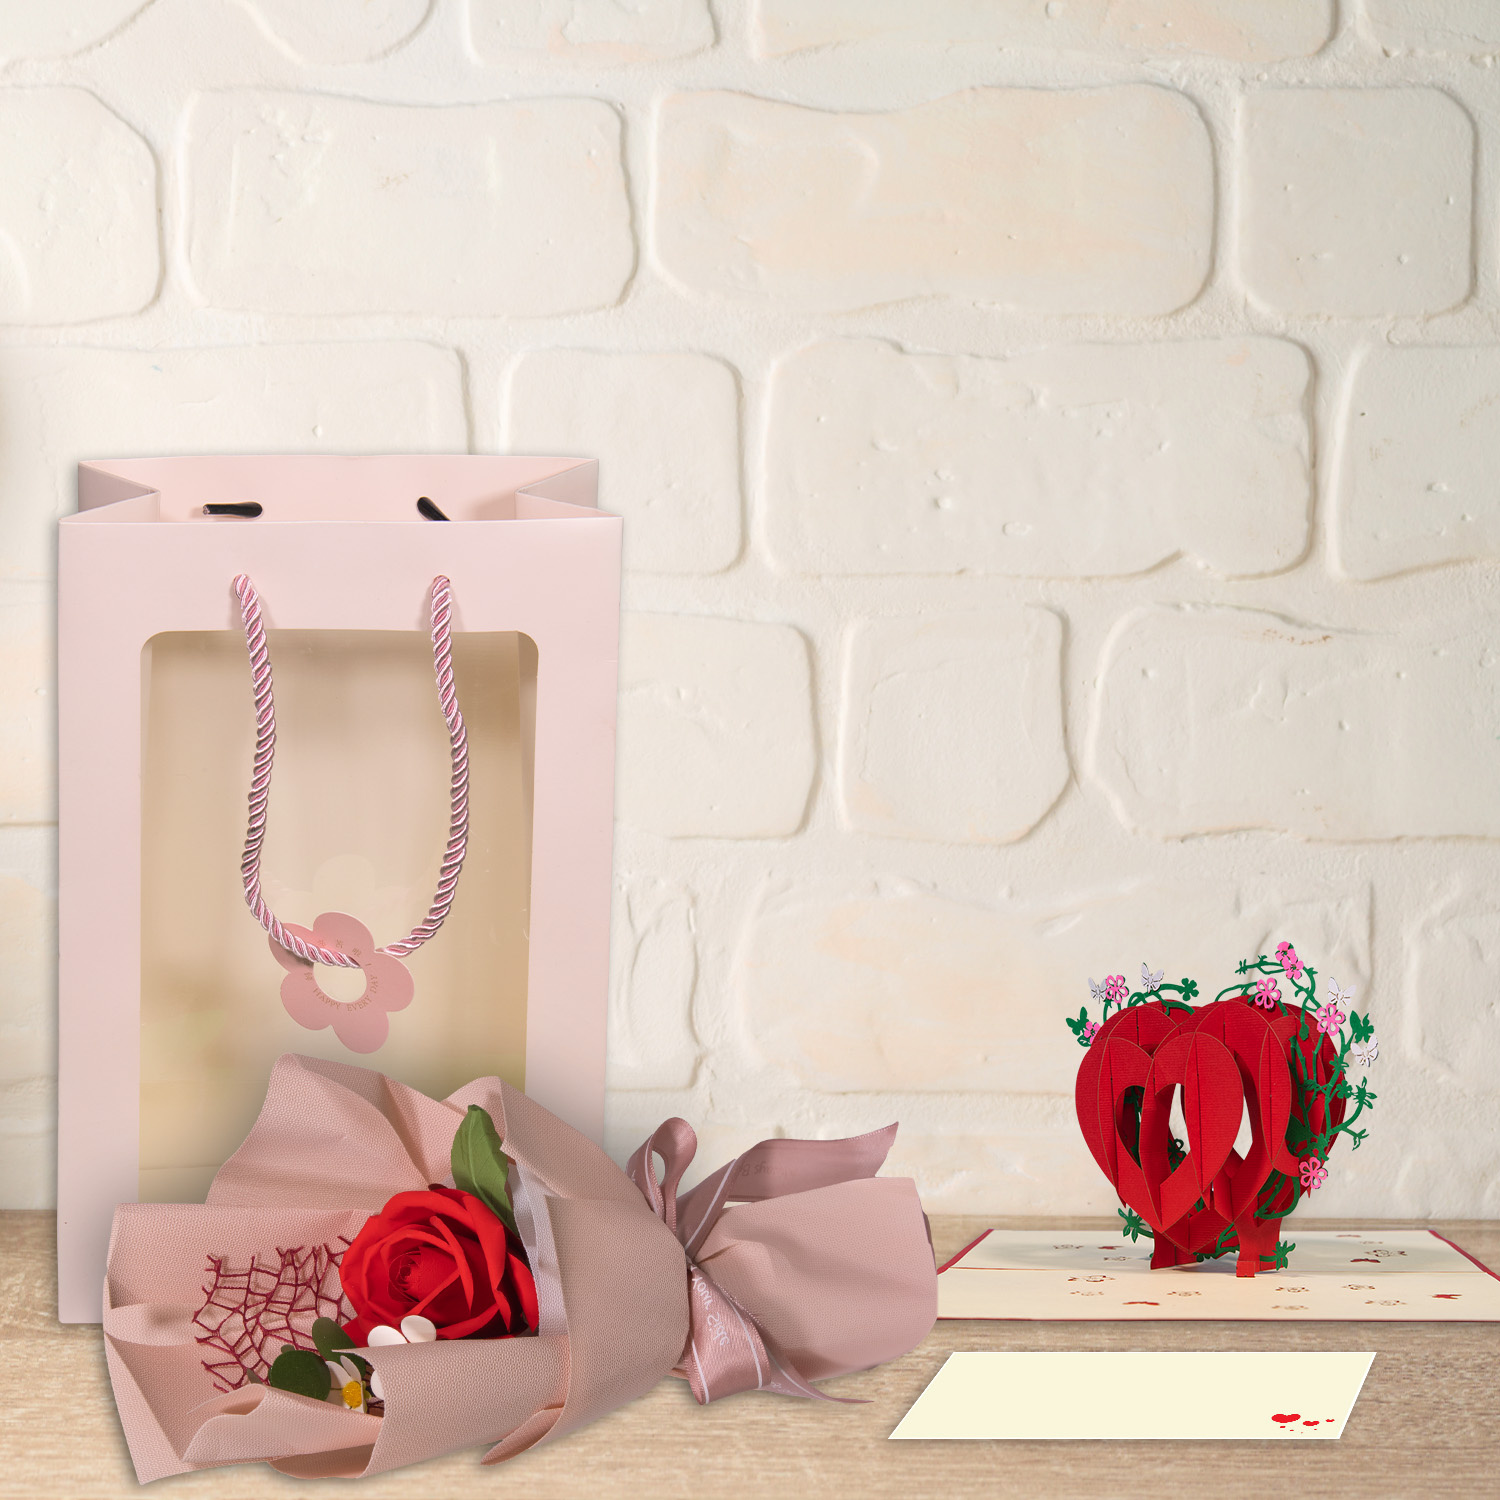 LINPOPUP Valentinstag Geschenk, LINPOPUP Liebes Geschenk Valentinstag oder für Jahrestag und Hochzeitstag – Handgemachte Ewige Rose mit 3D - Pop - Up Karte Herz aus hochwertigem Papier in einer exklusiven Tüte